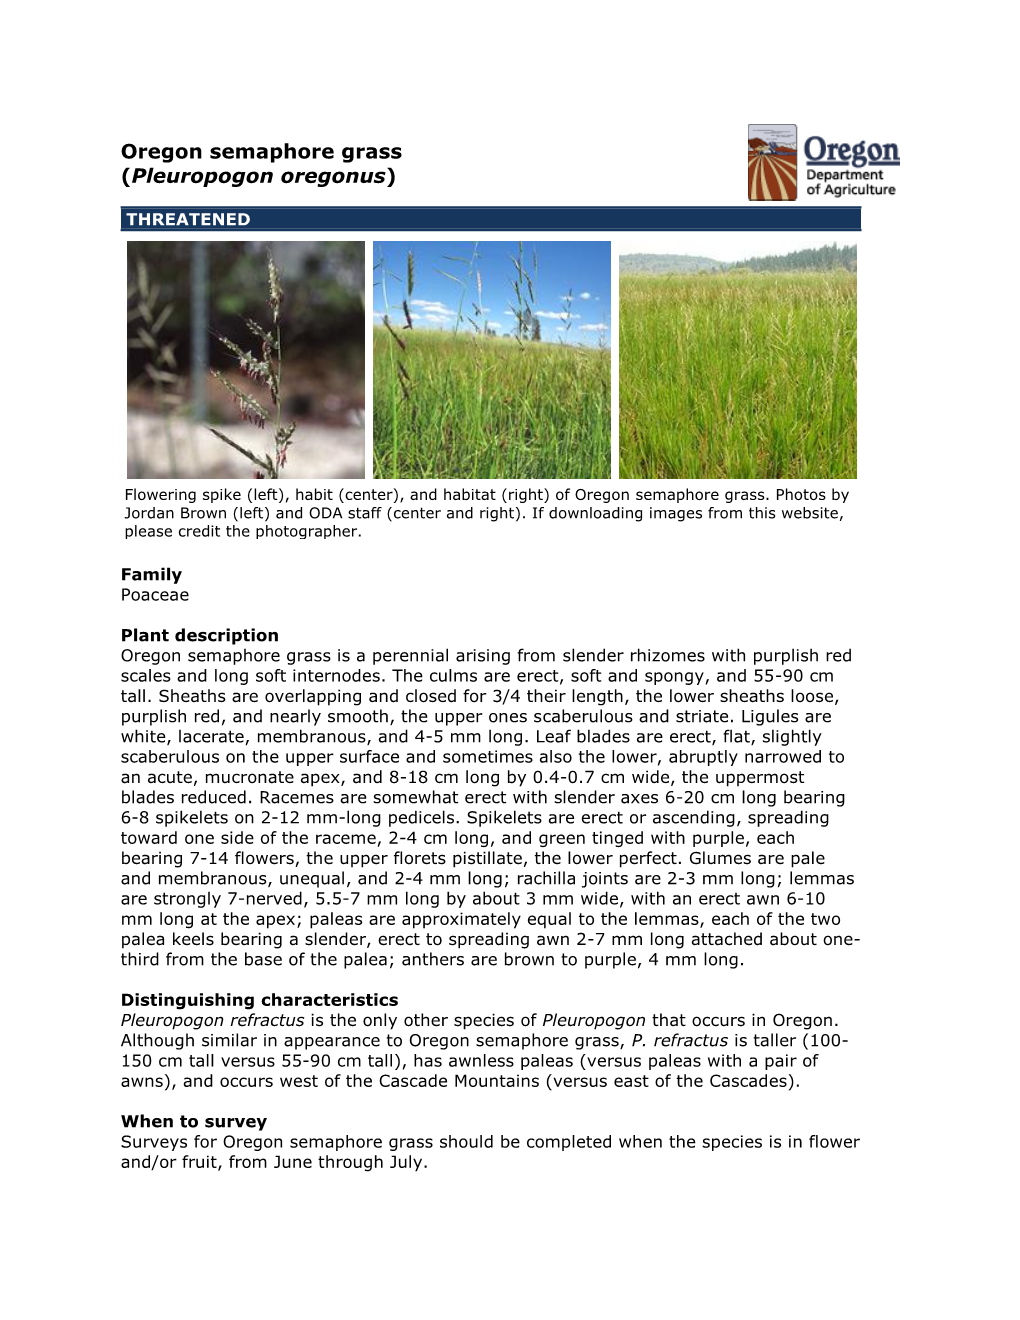 Oregon Semaphore Grass (Pleuropogon Oregonus)